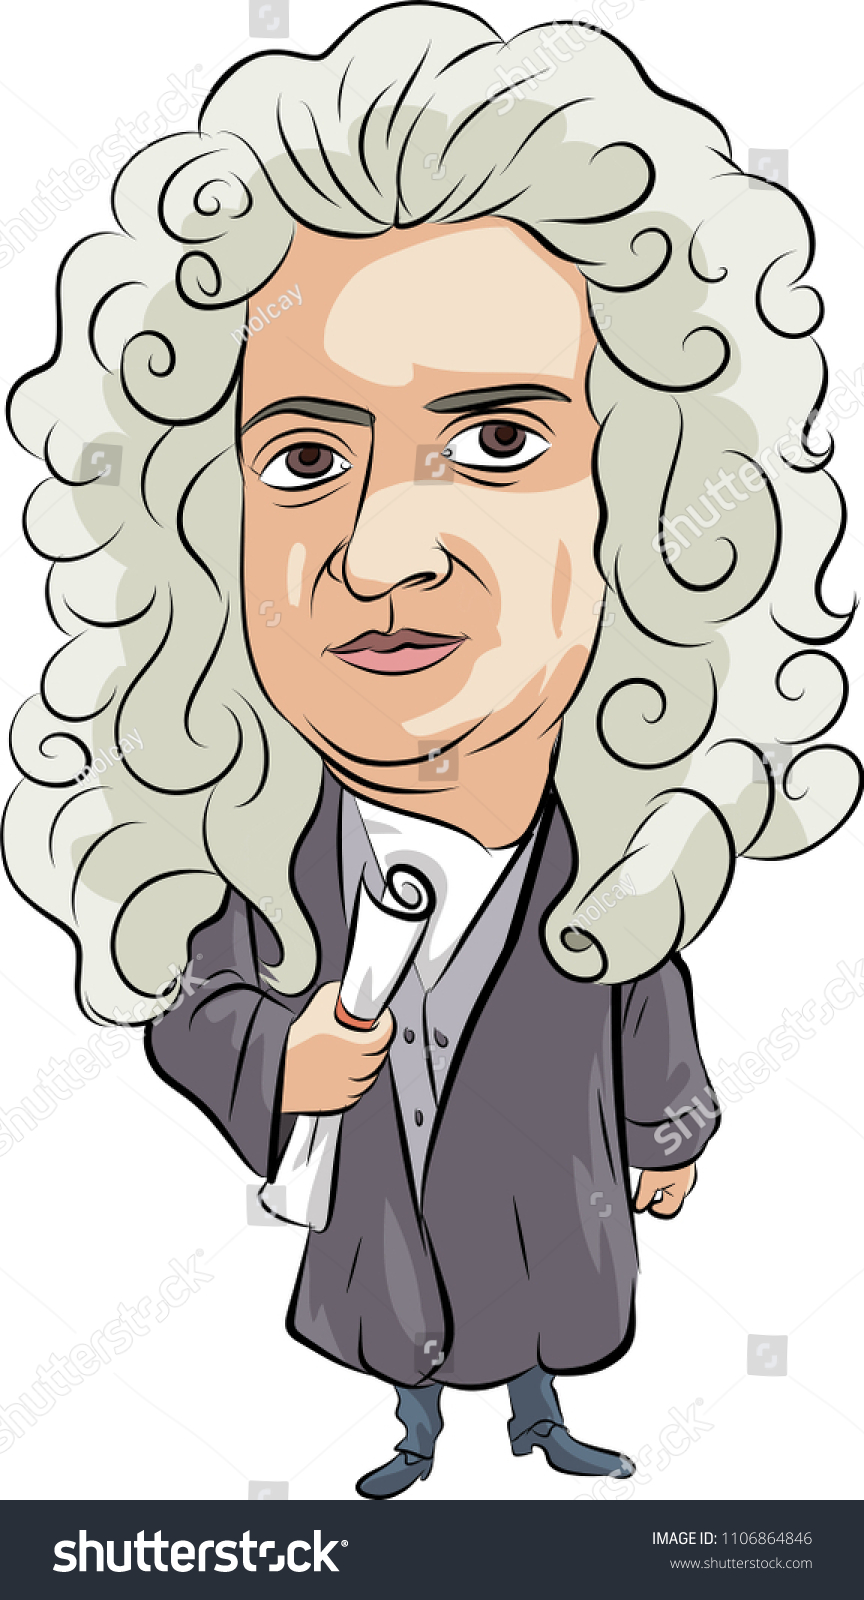 Isaac Newton Cartoon: vector de stock (libre de regalías) 1106864846